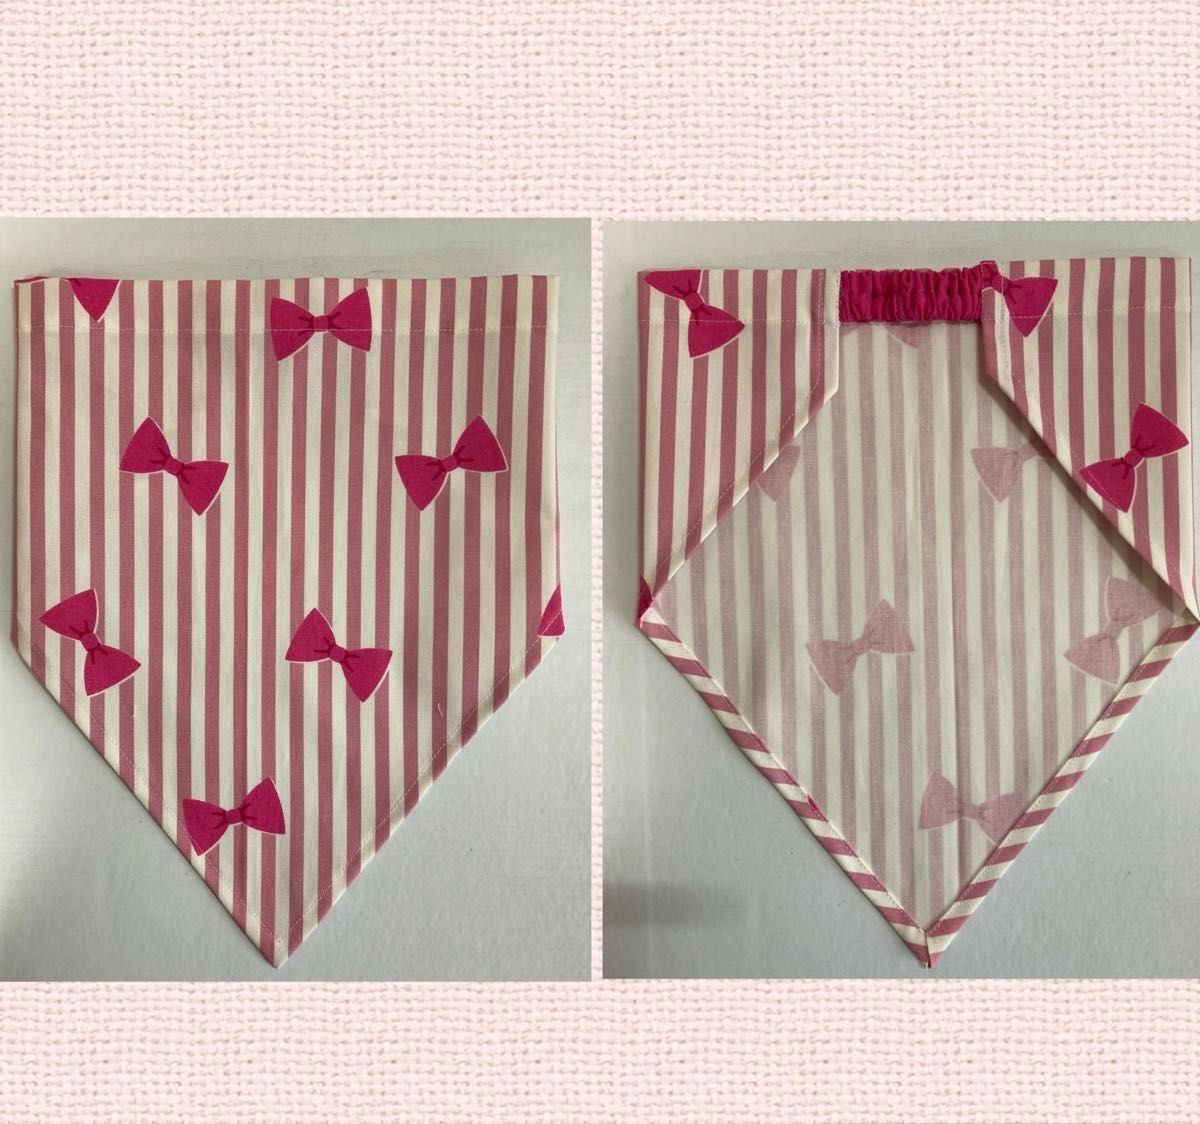 【ハンドメイド】子供エプロン&三角巾.100〜110cm.Bタイプ